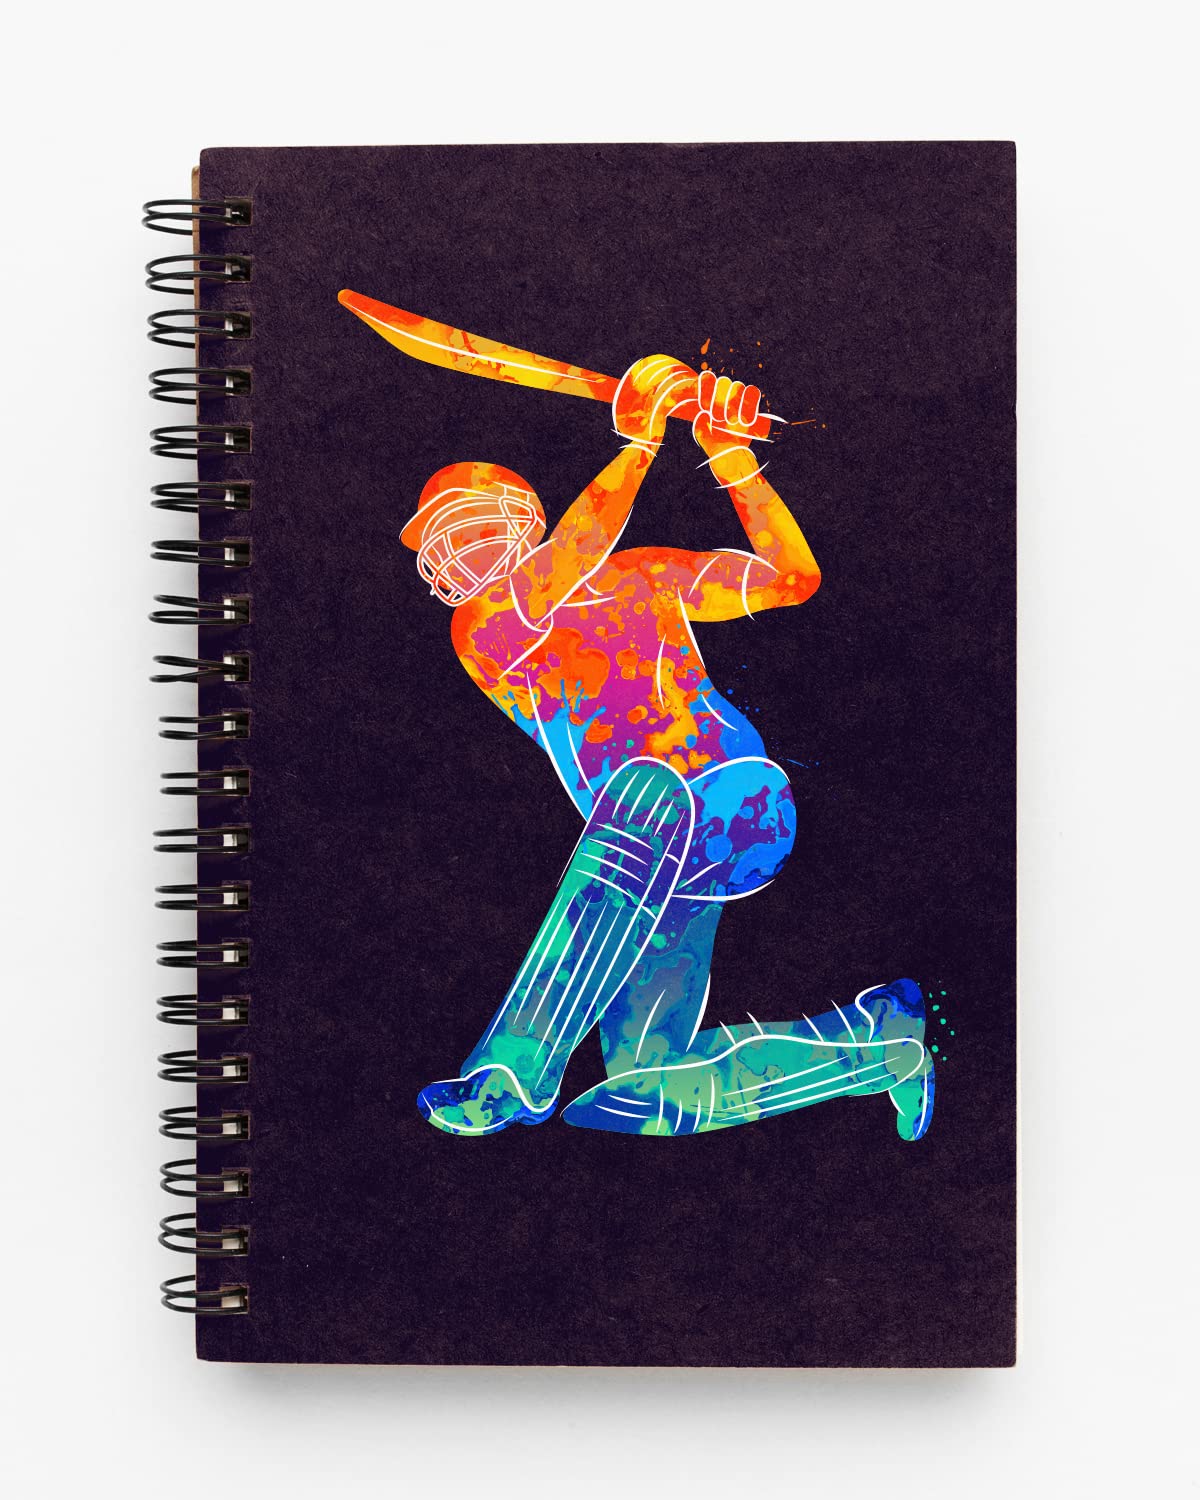 Abstract Batsman Spiral Notebook